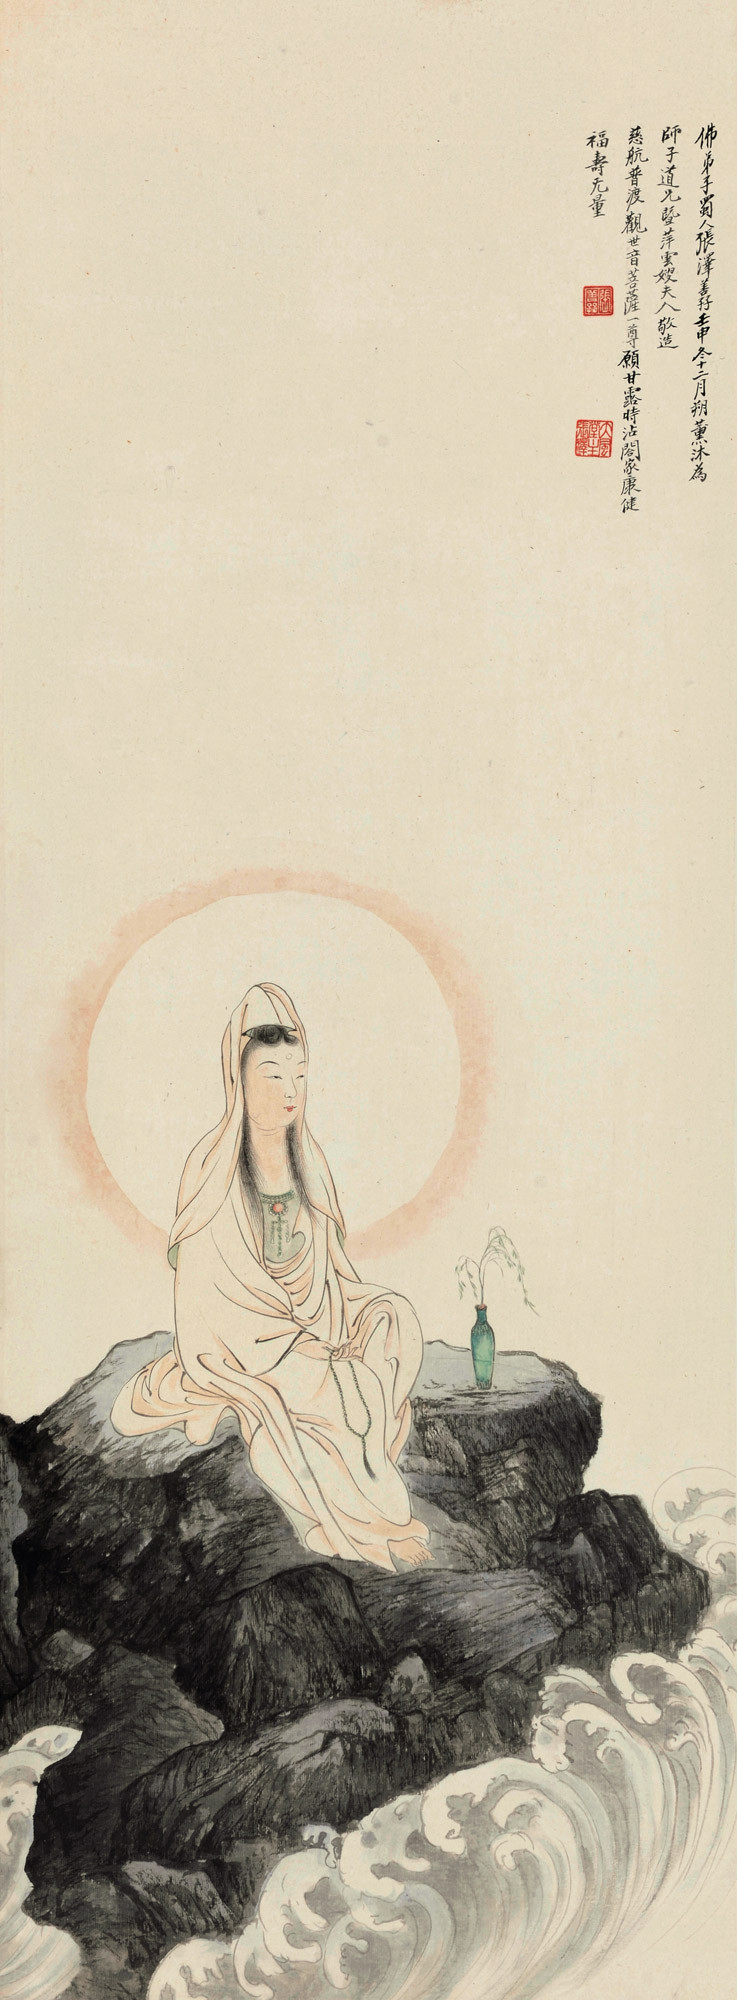 PORTRAIT OF KWAN-YIN